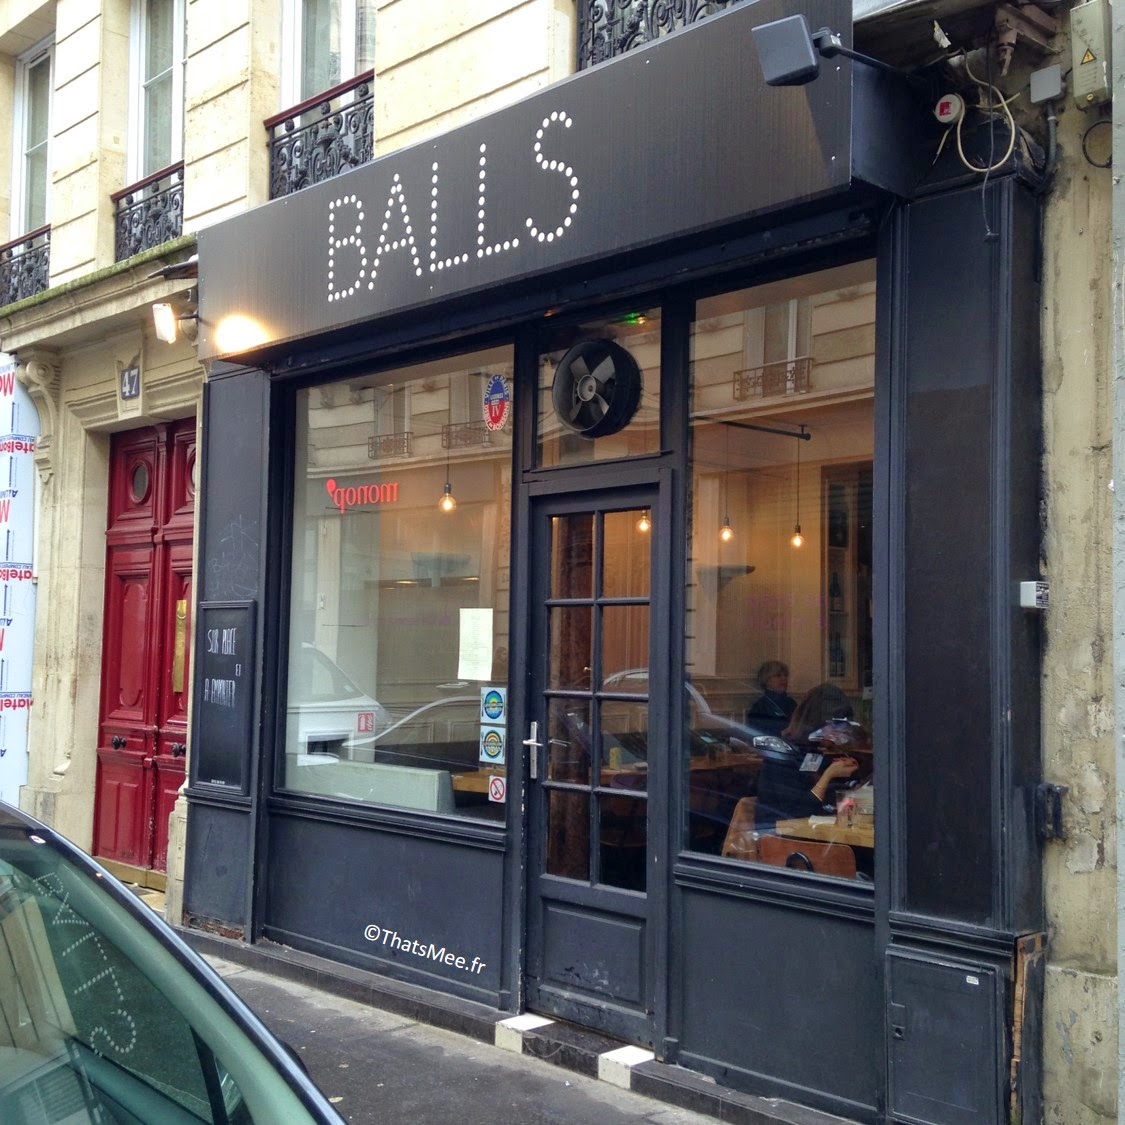 Resto Balls rue Saint-maur Paris 11ème spécialité boulette viande meatball